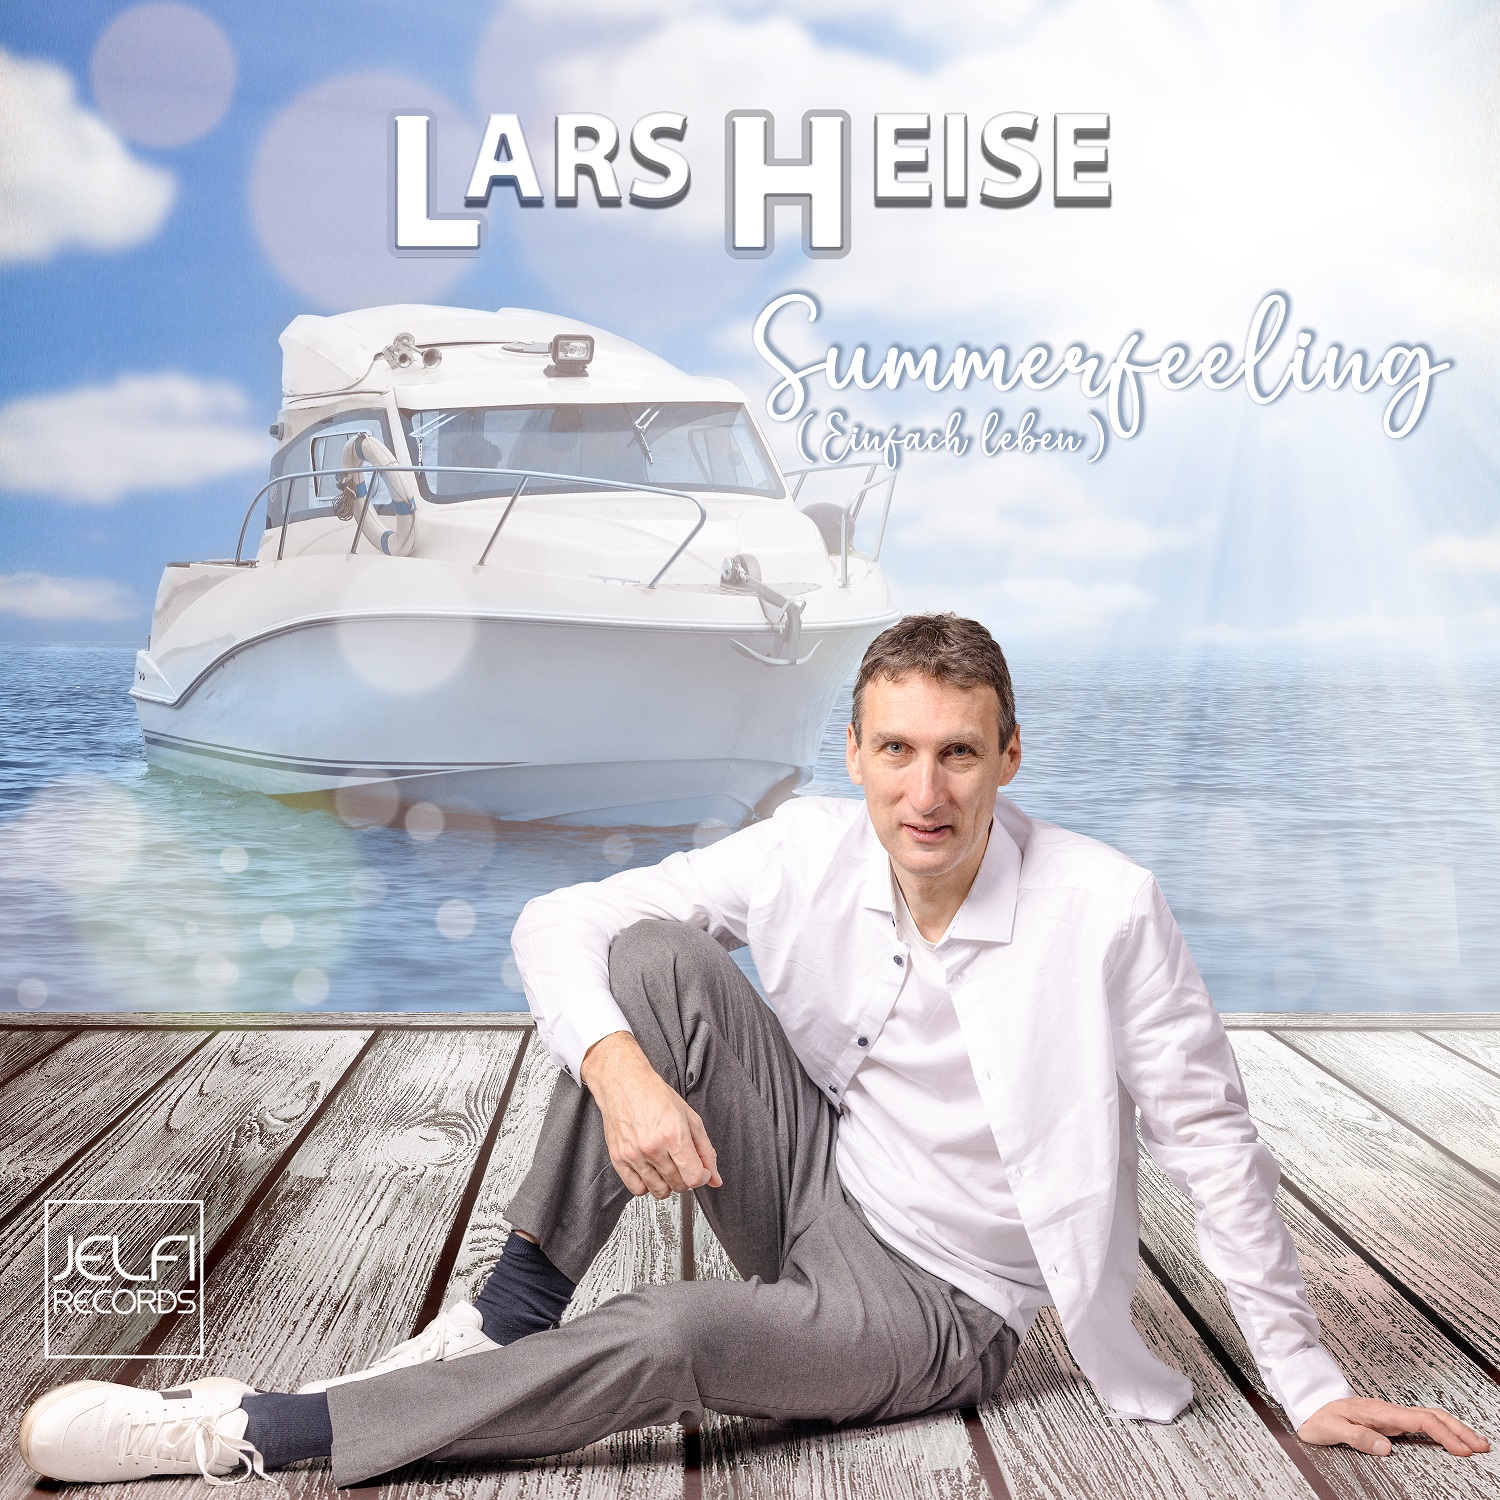 Lars Heise - Summerfeeling (Einfach leben) - Cover.jpg